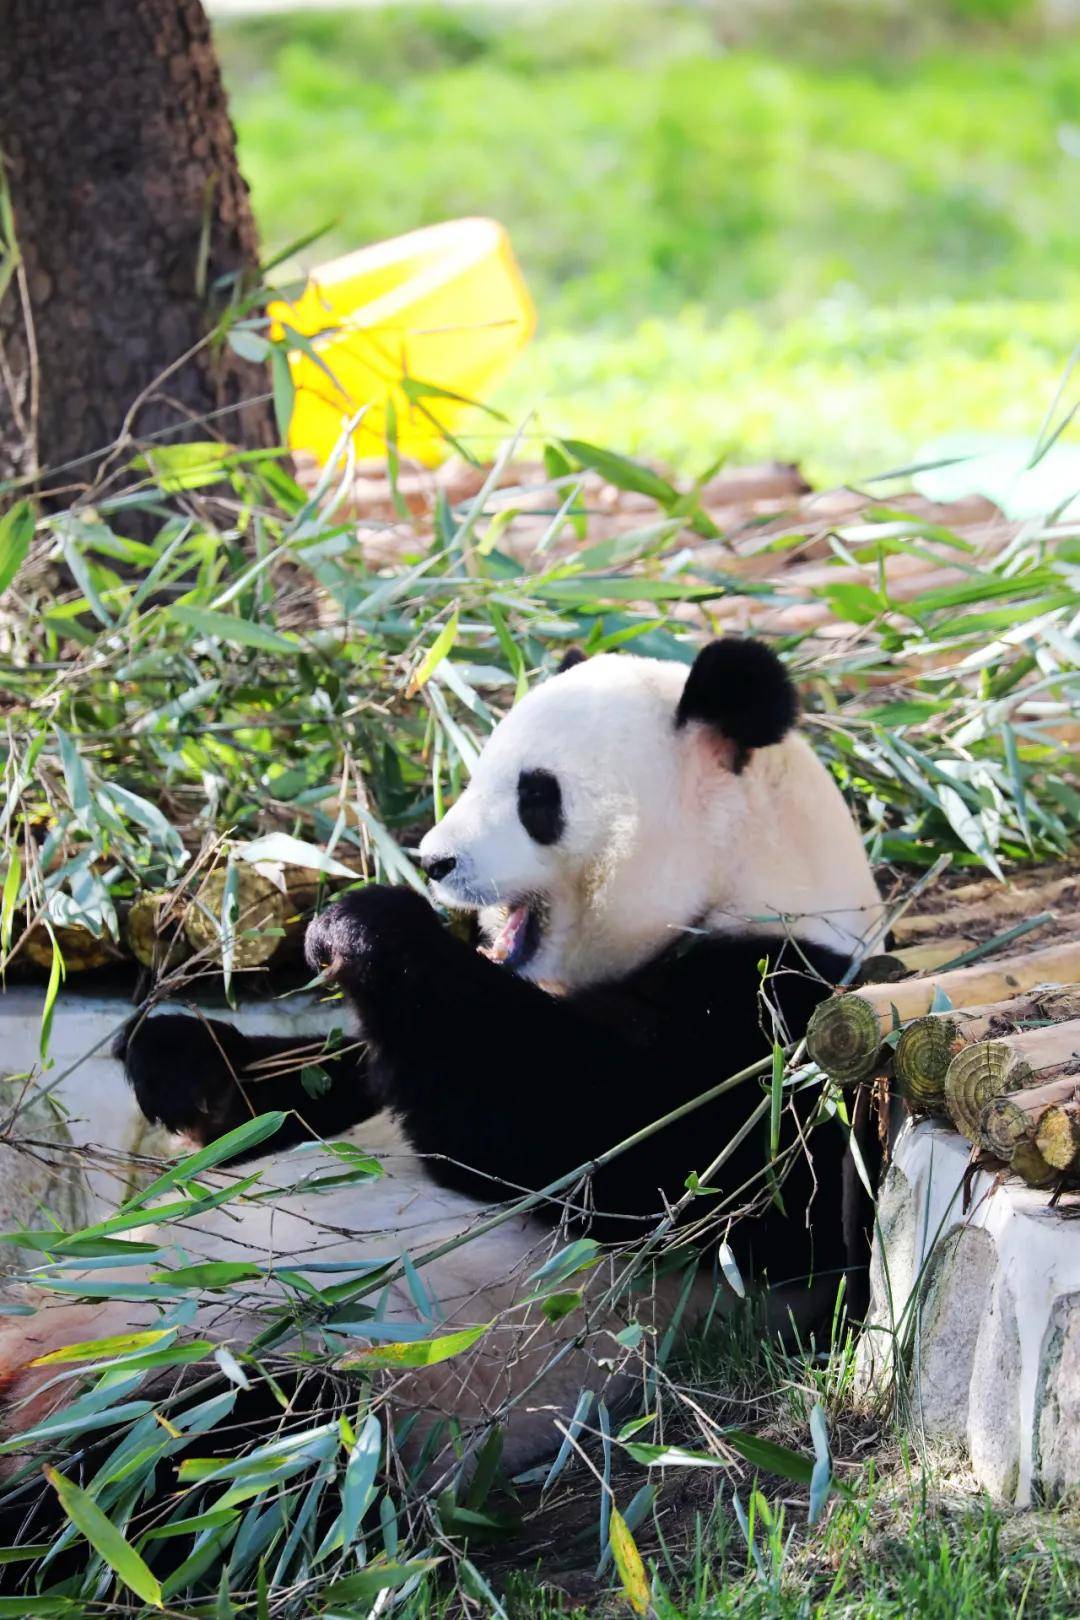 秦岭四川大熊猫对比照图片